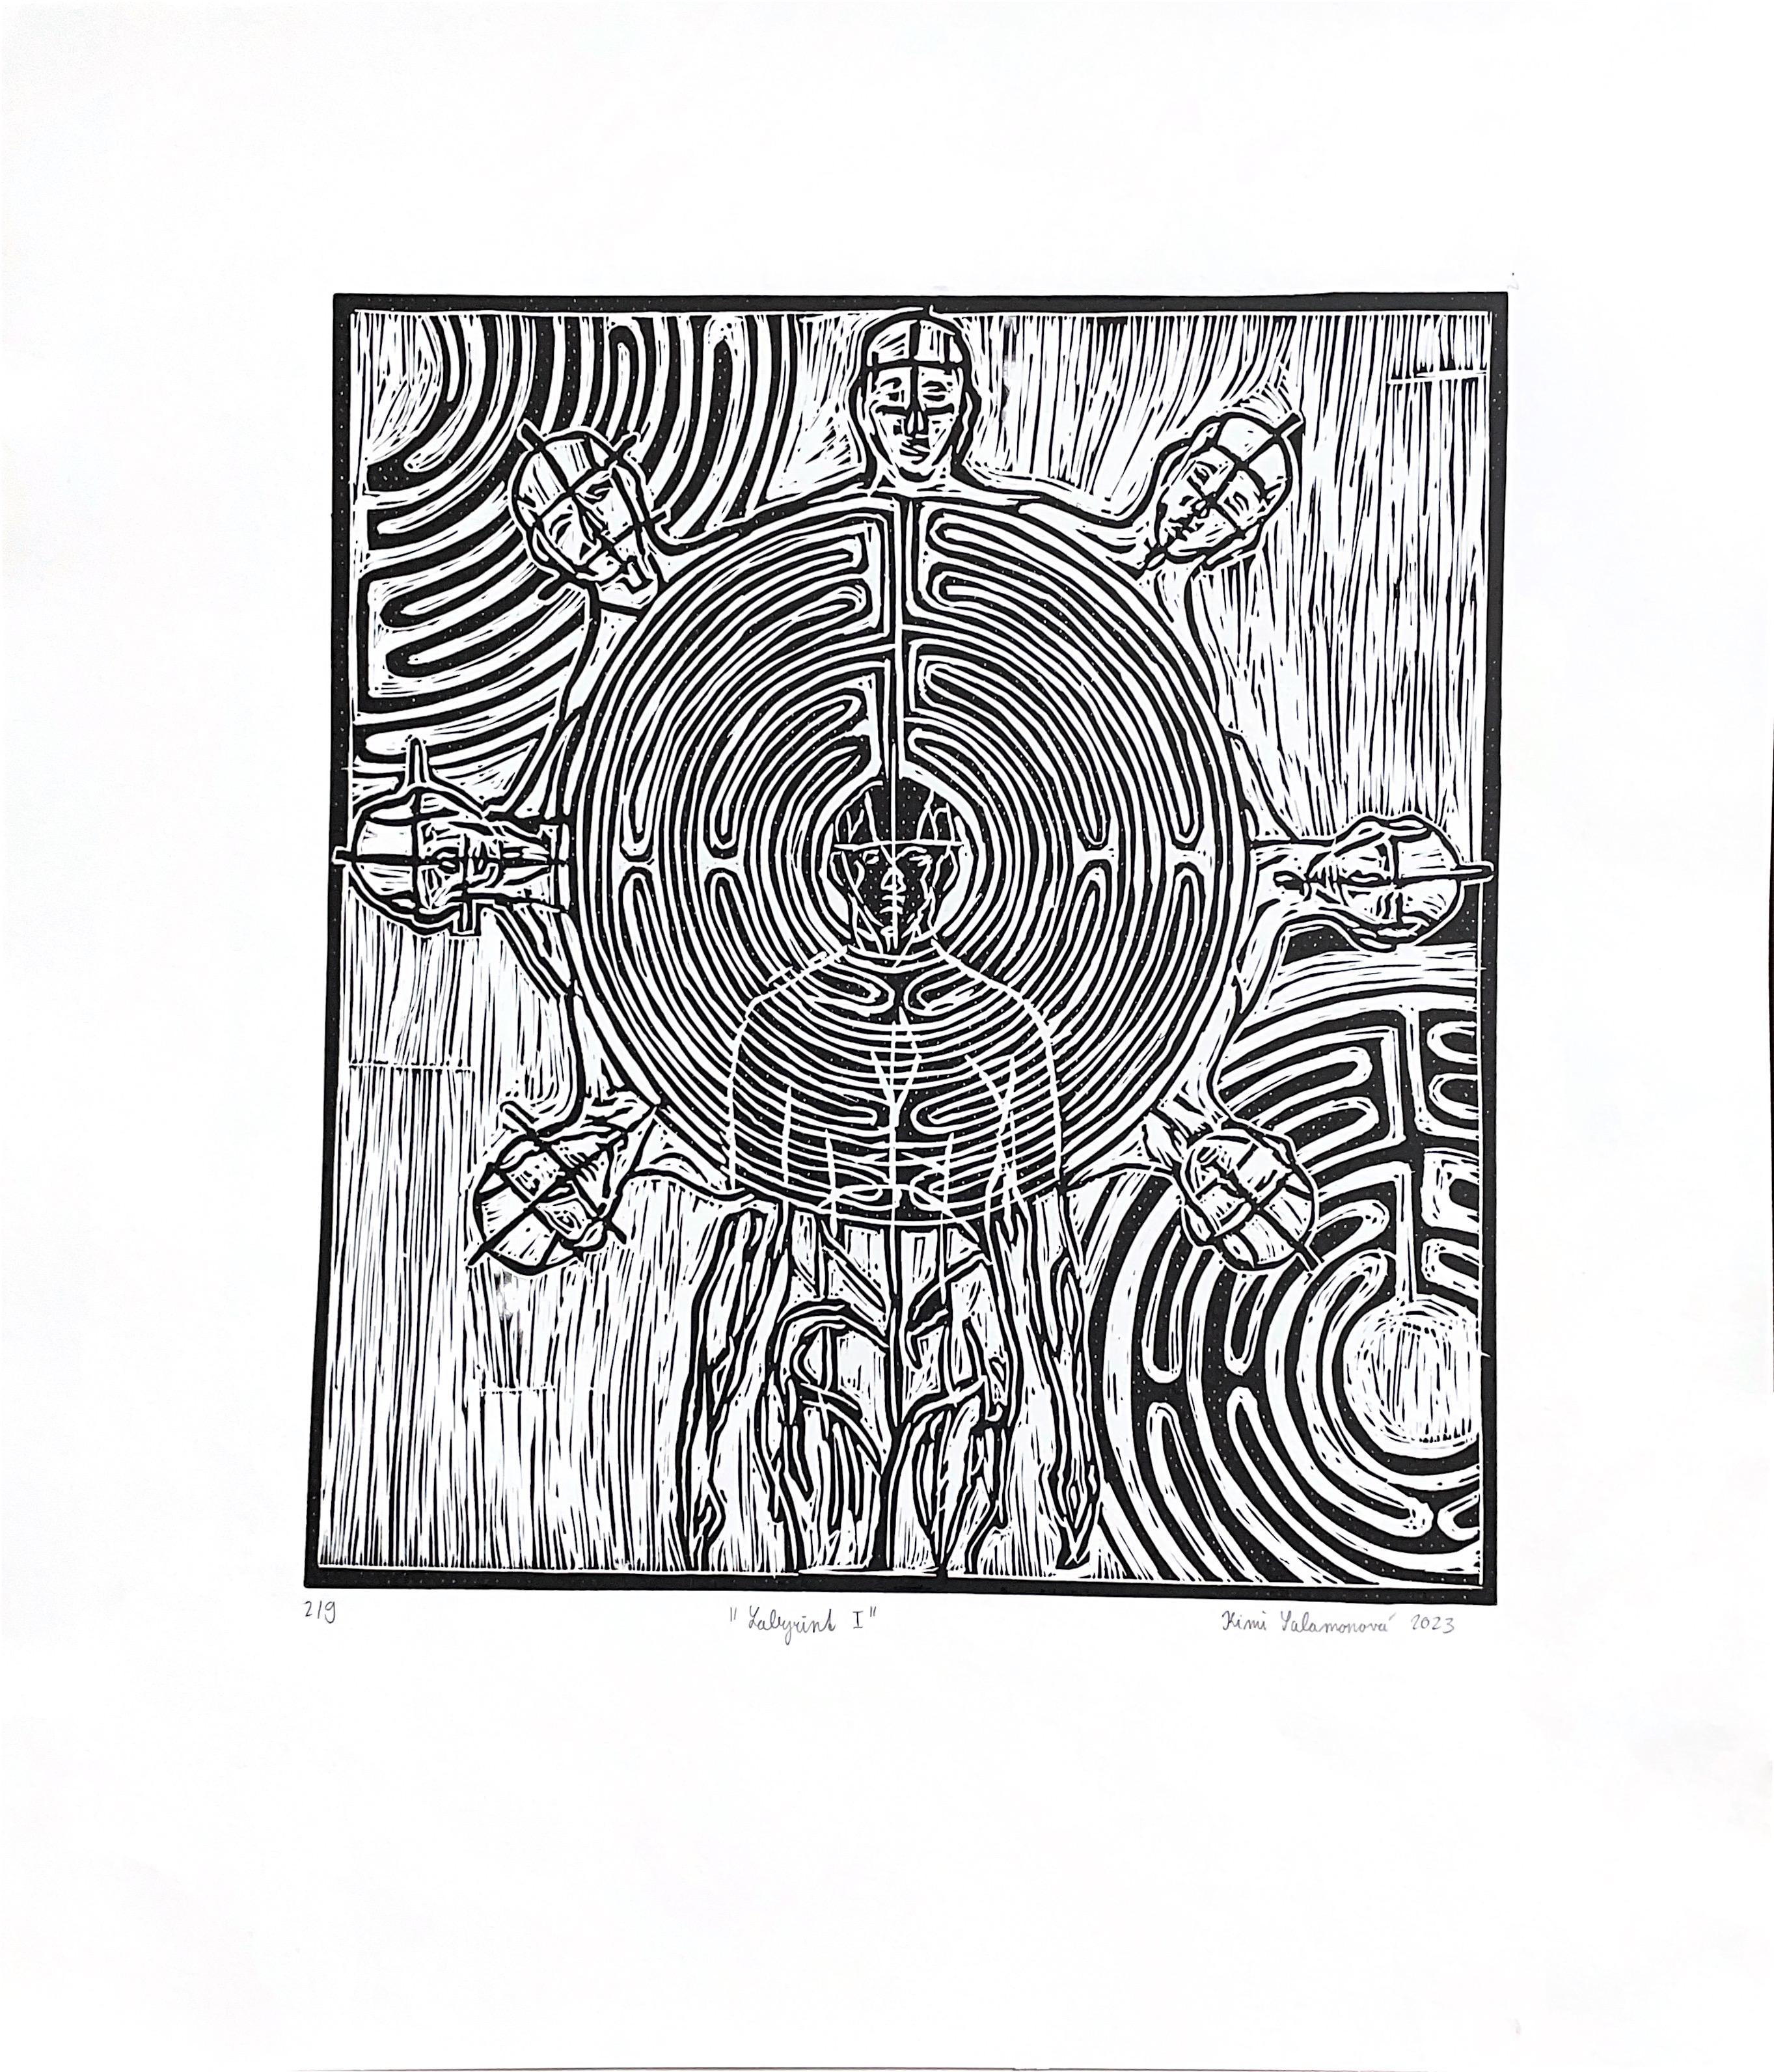 Kimi Salamonova Abstract Print - Labyrint I. / Linocut / Edition 2/6 and signed